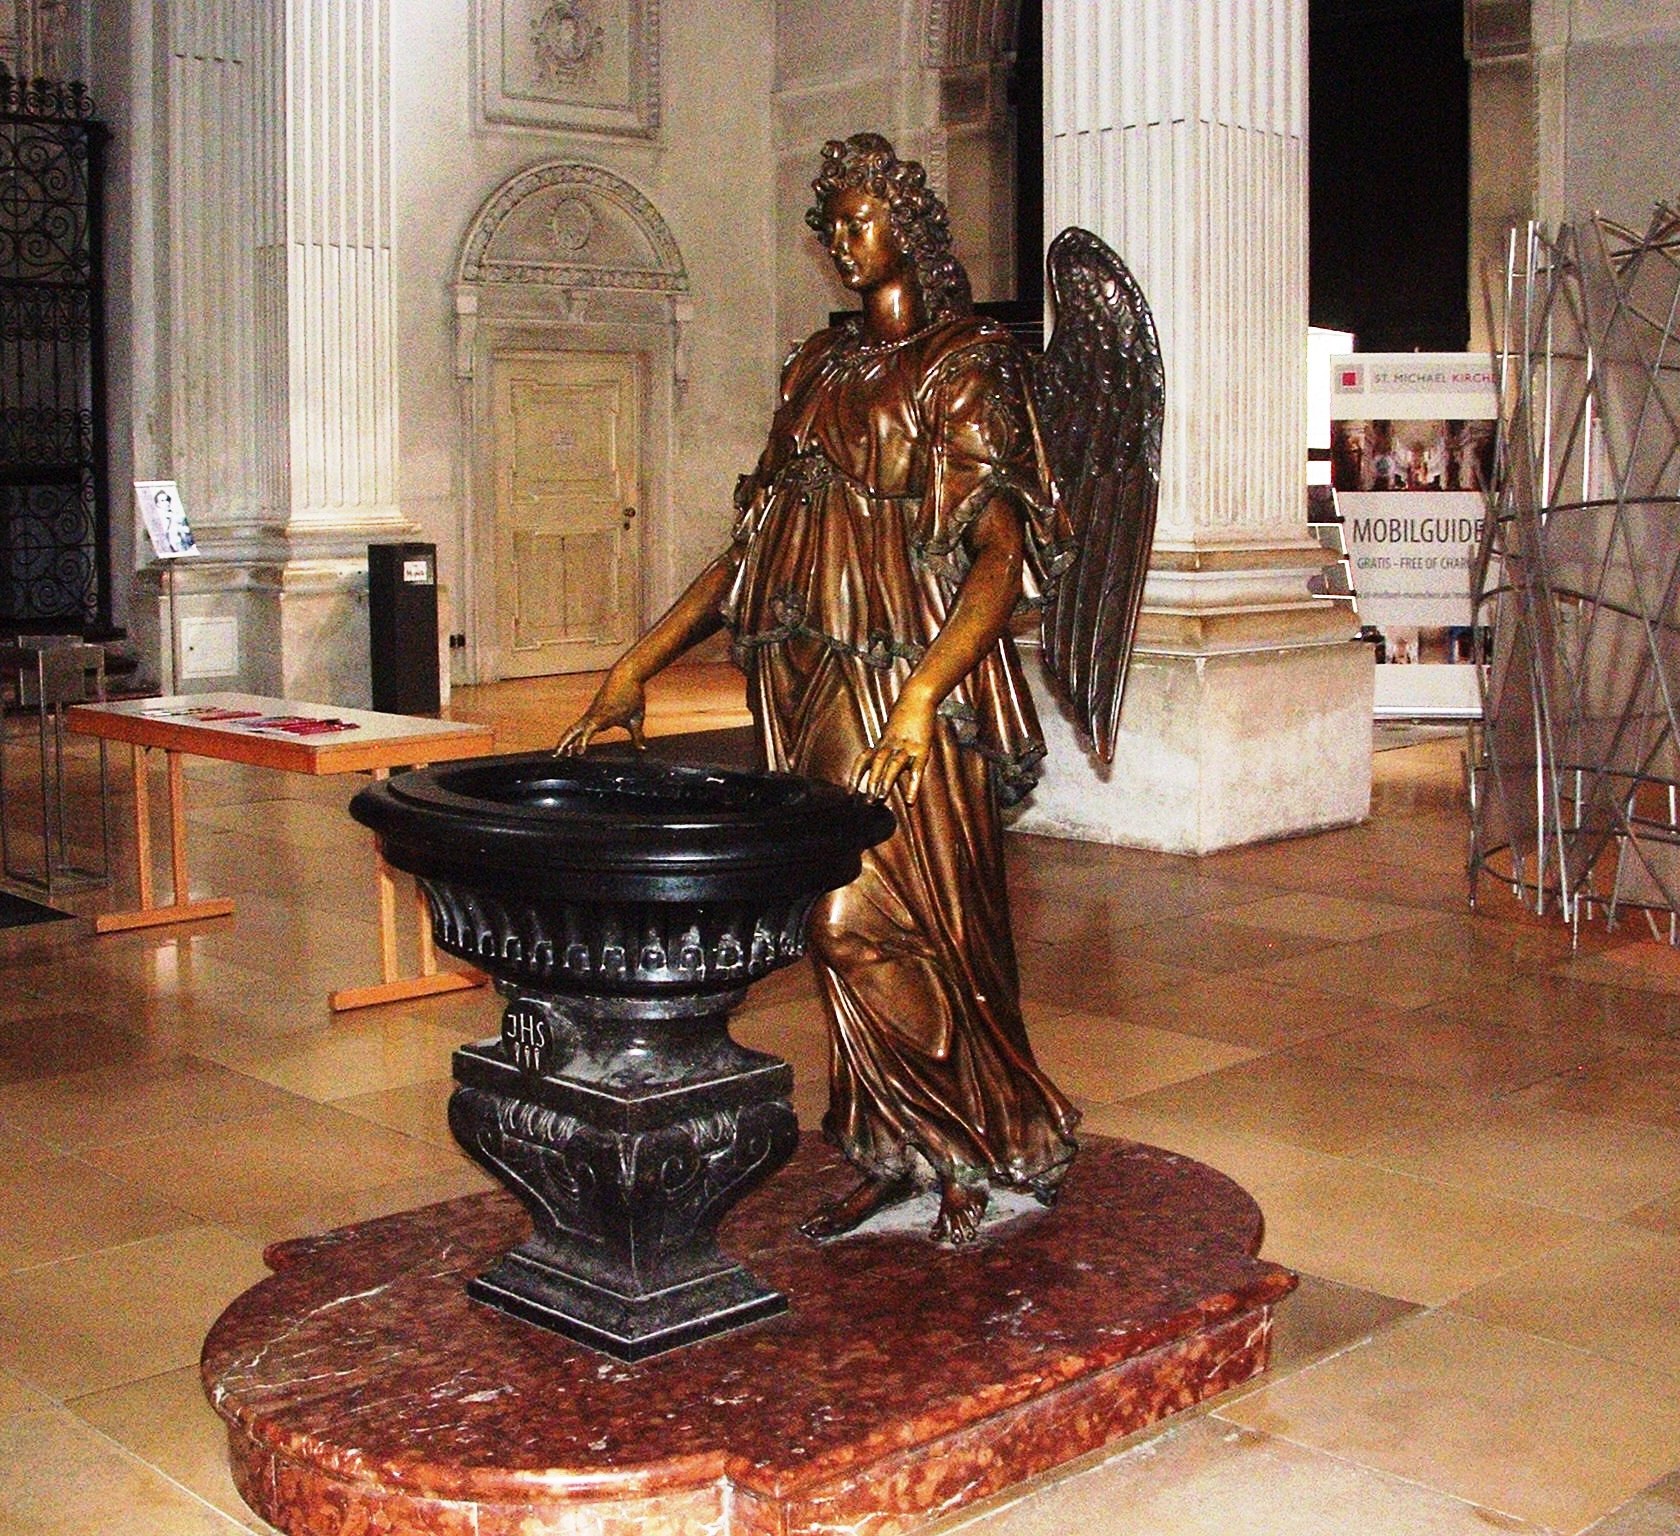 Figura św. Michała Archanioła z kościoła w Monachium, fot. Bożena Rojek